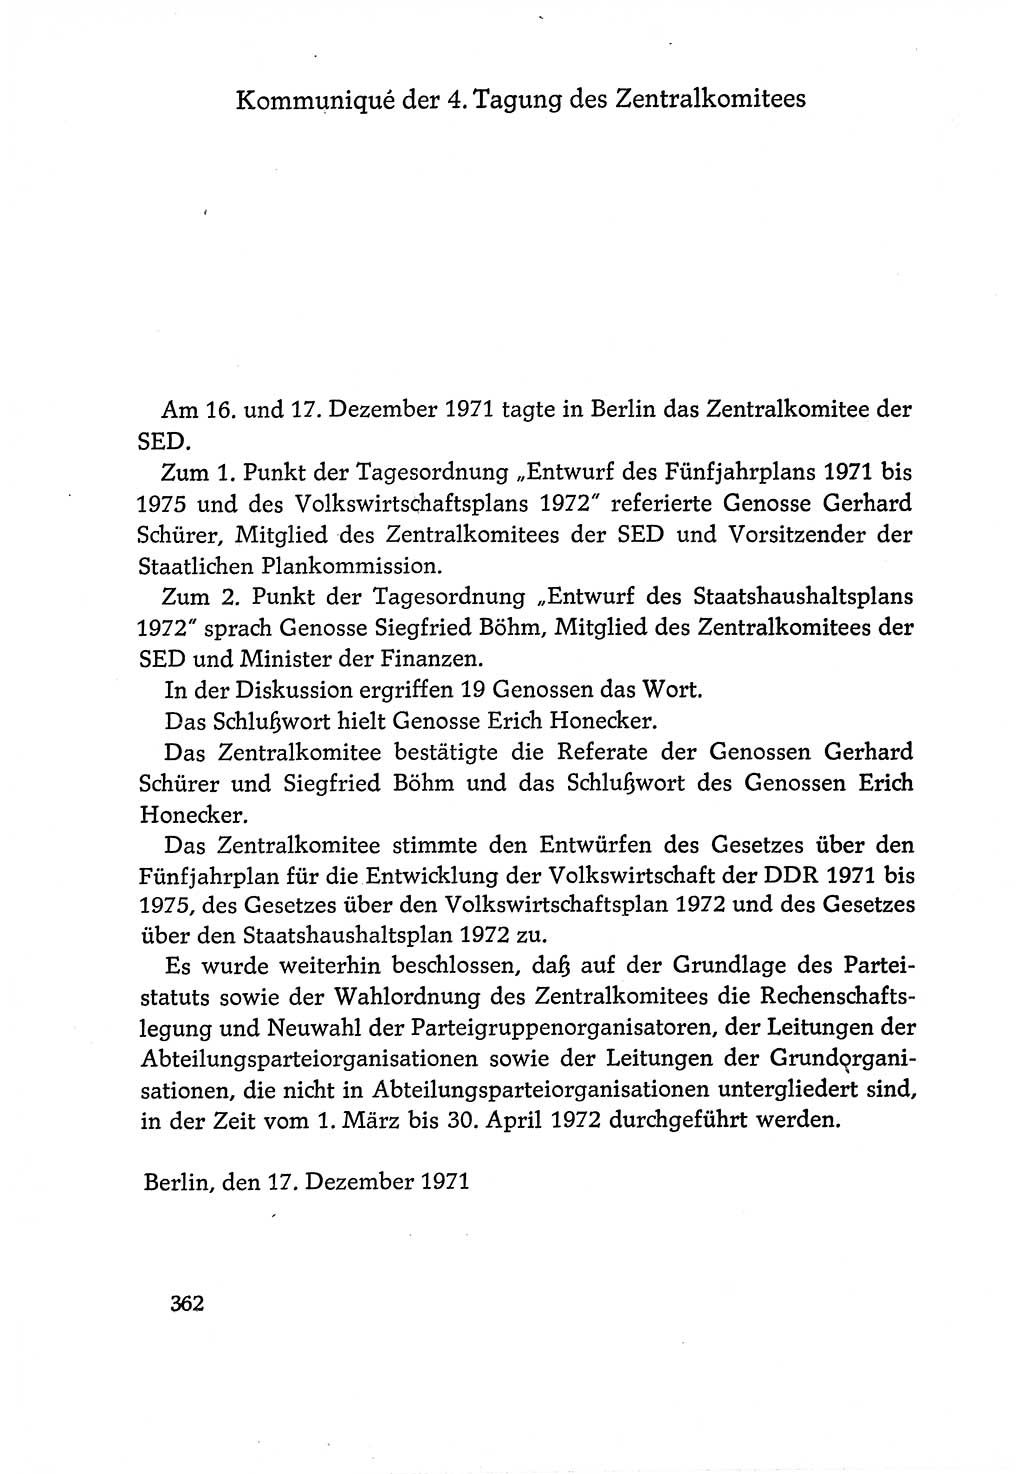 Dokumente der Sozialistischen Einheitspartei Deutschlands (SED) [Deutsche Demokratische Republik (DDR)] 1970-1971, Seite 362 (Dok. SED DDR 1970-1971, S. 362)